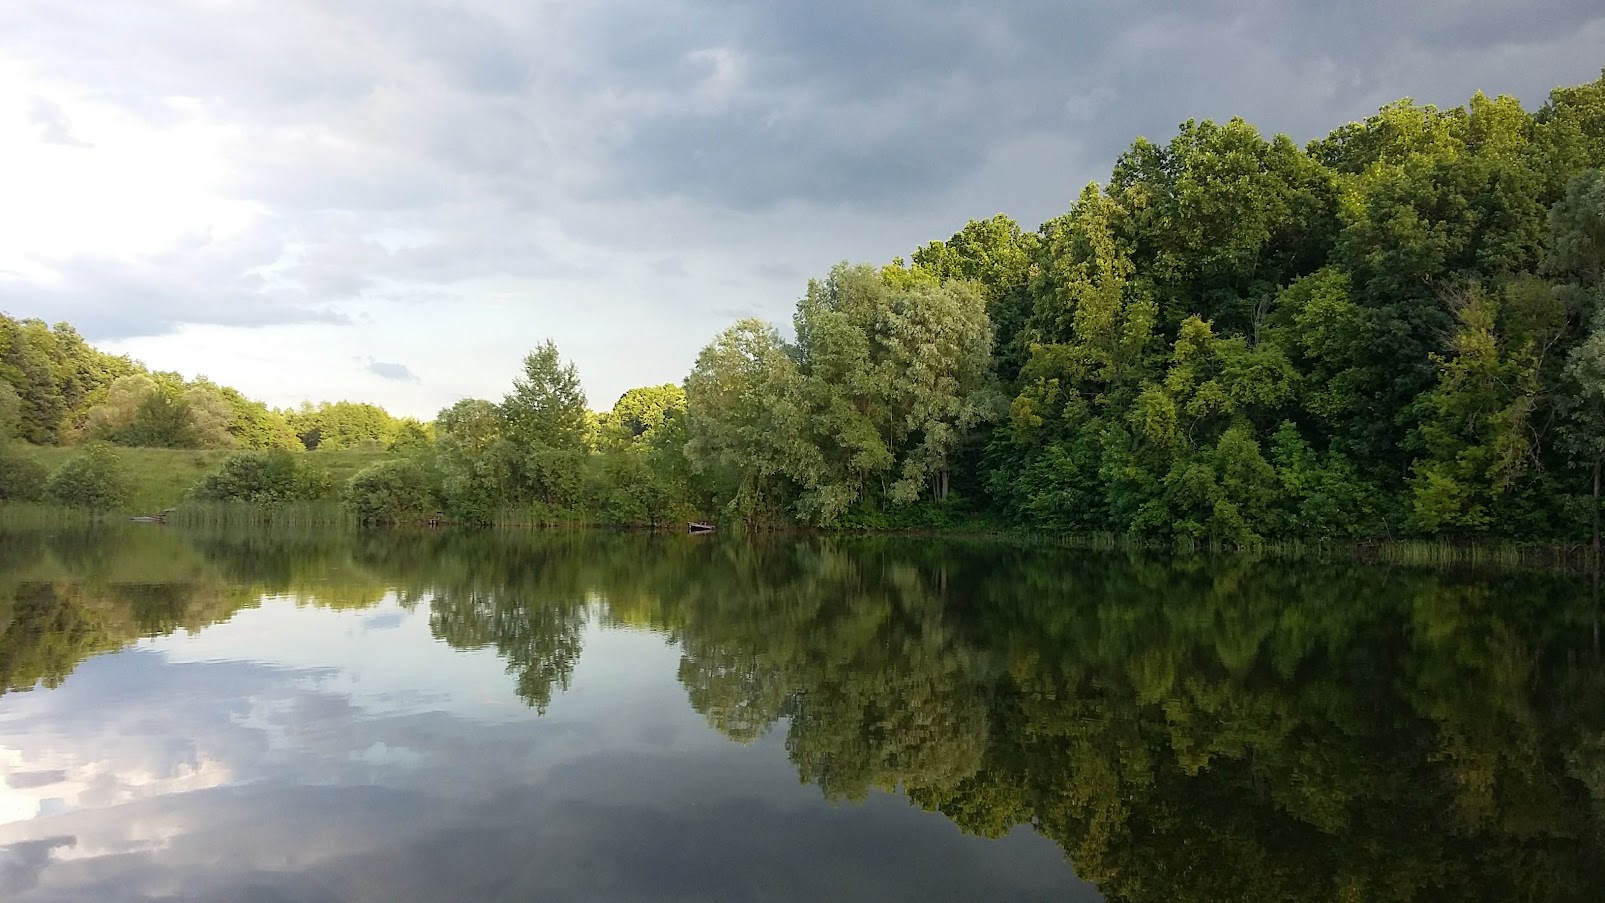 Прокуратура вимагає від приватного підприємства звільнити одне з найбільших водосховищ на Харківщині